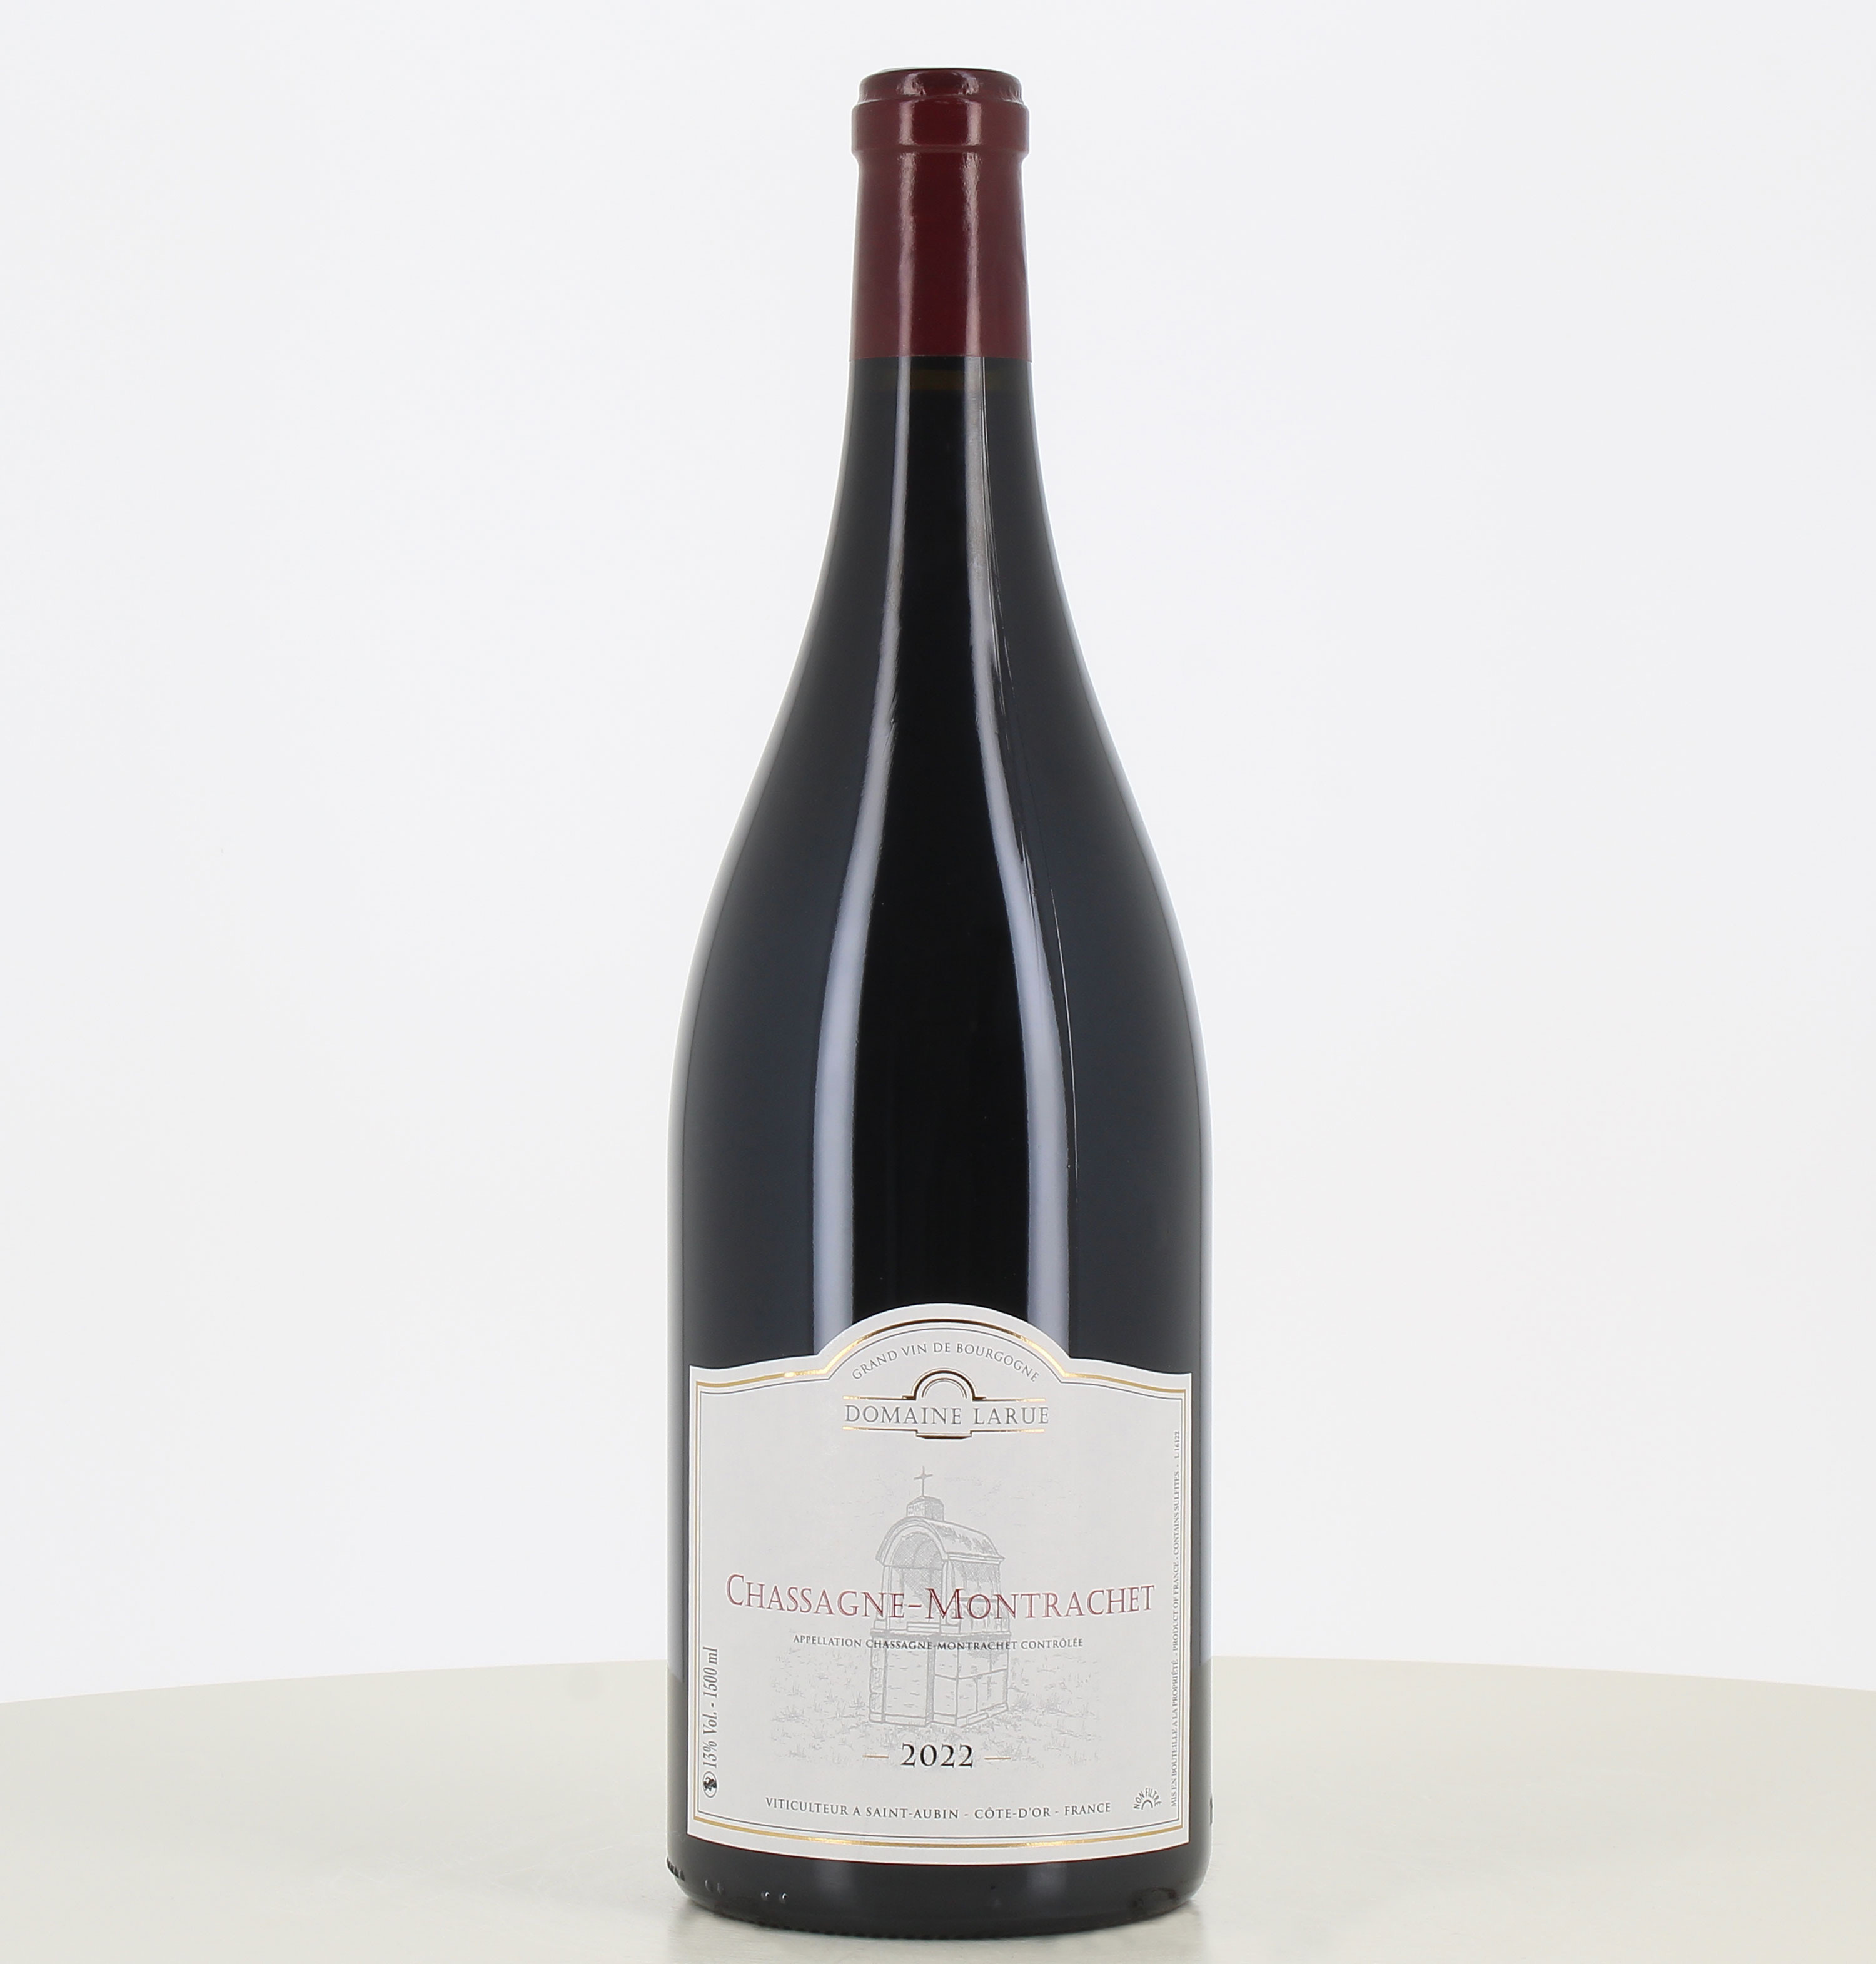 Magnum de vino tinto Chassagne-Montrachet del dominio Larue 2022. 